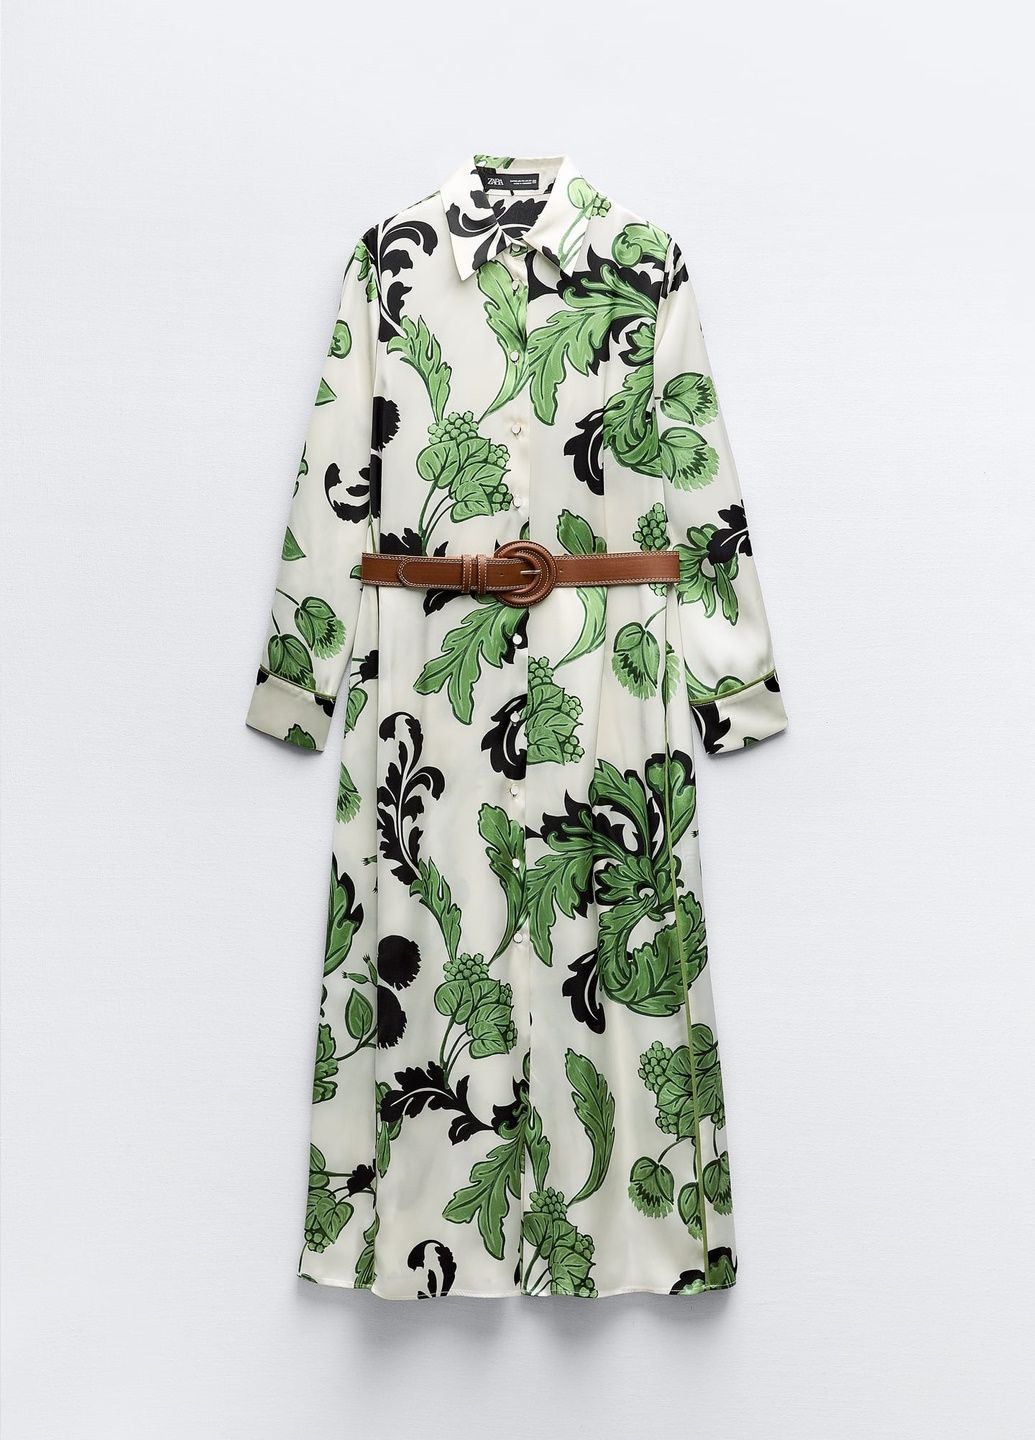 Зелена повсякденний сукня Zara з квітковим принтом